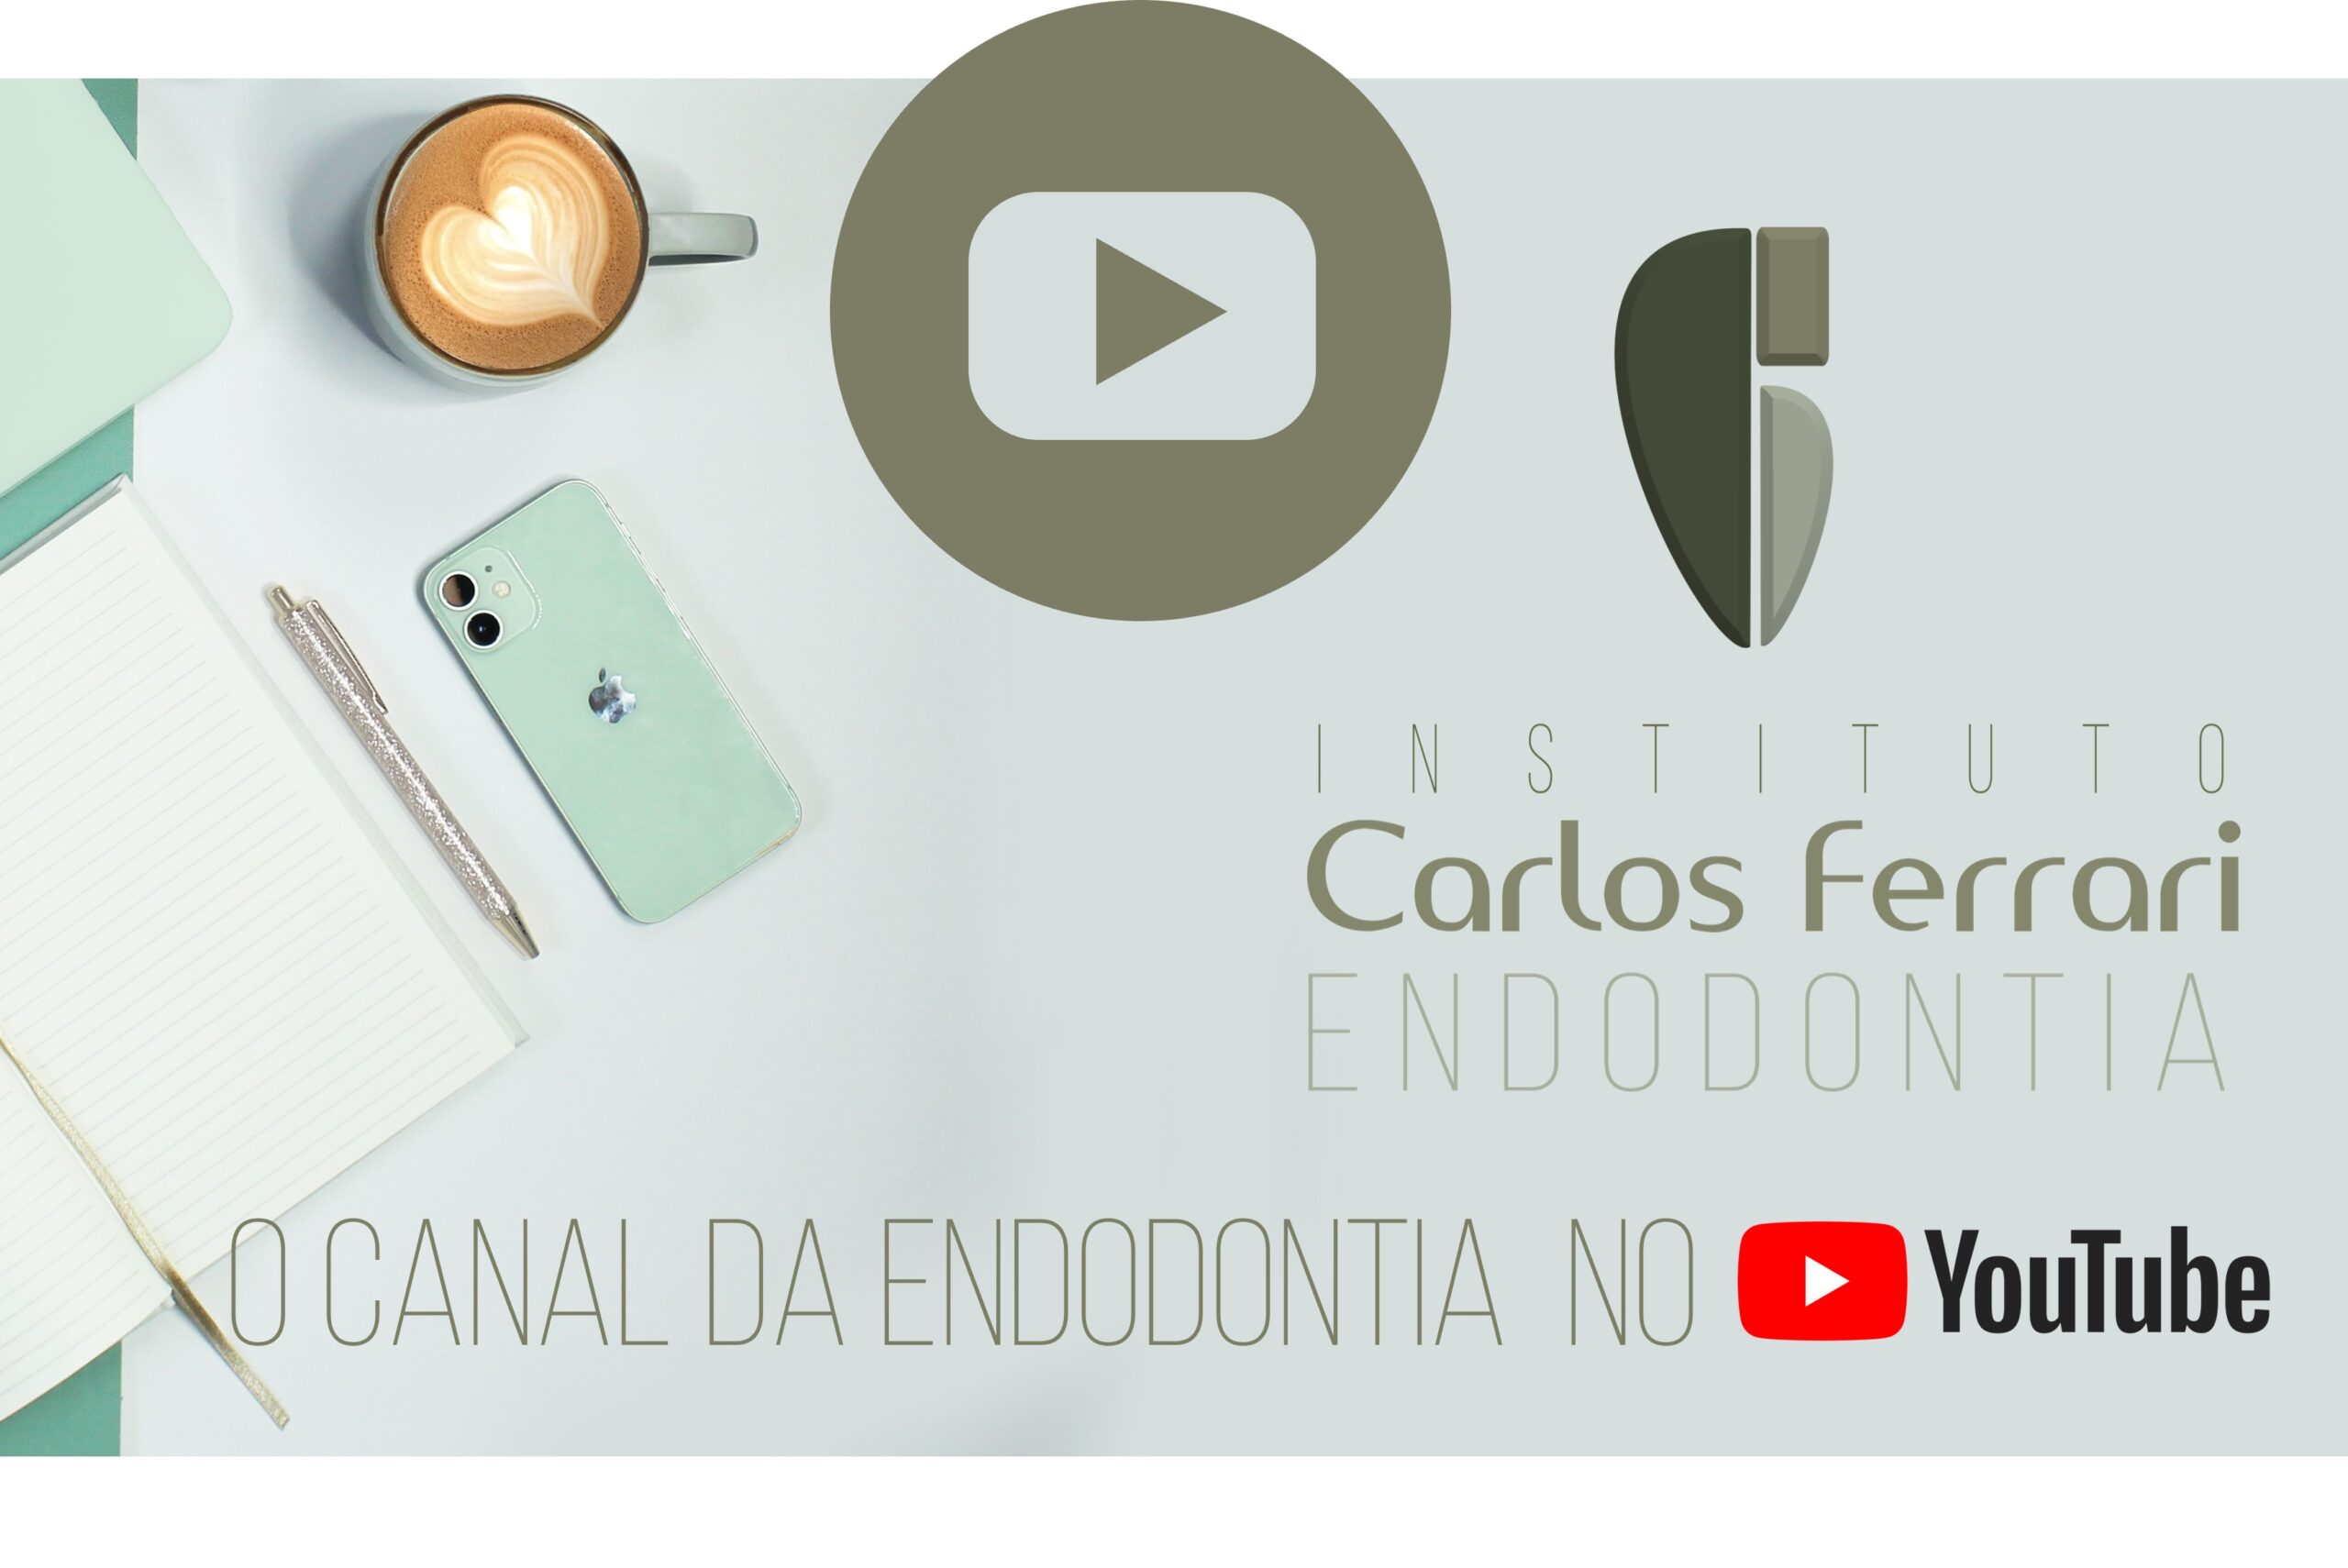 Actualmente estás viendo Endodoncia en youtube. Canal Carlos Ferrari.